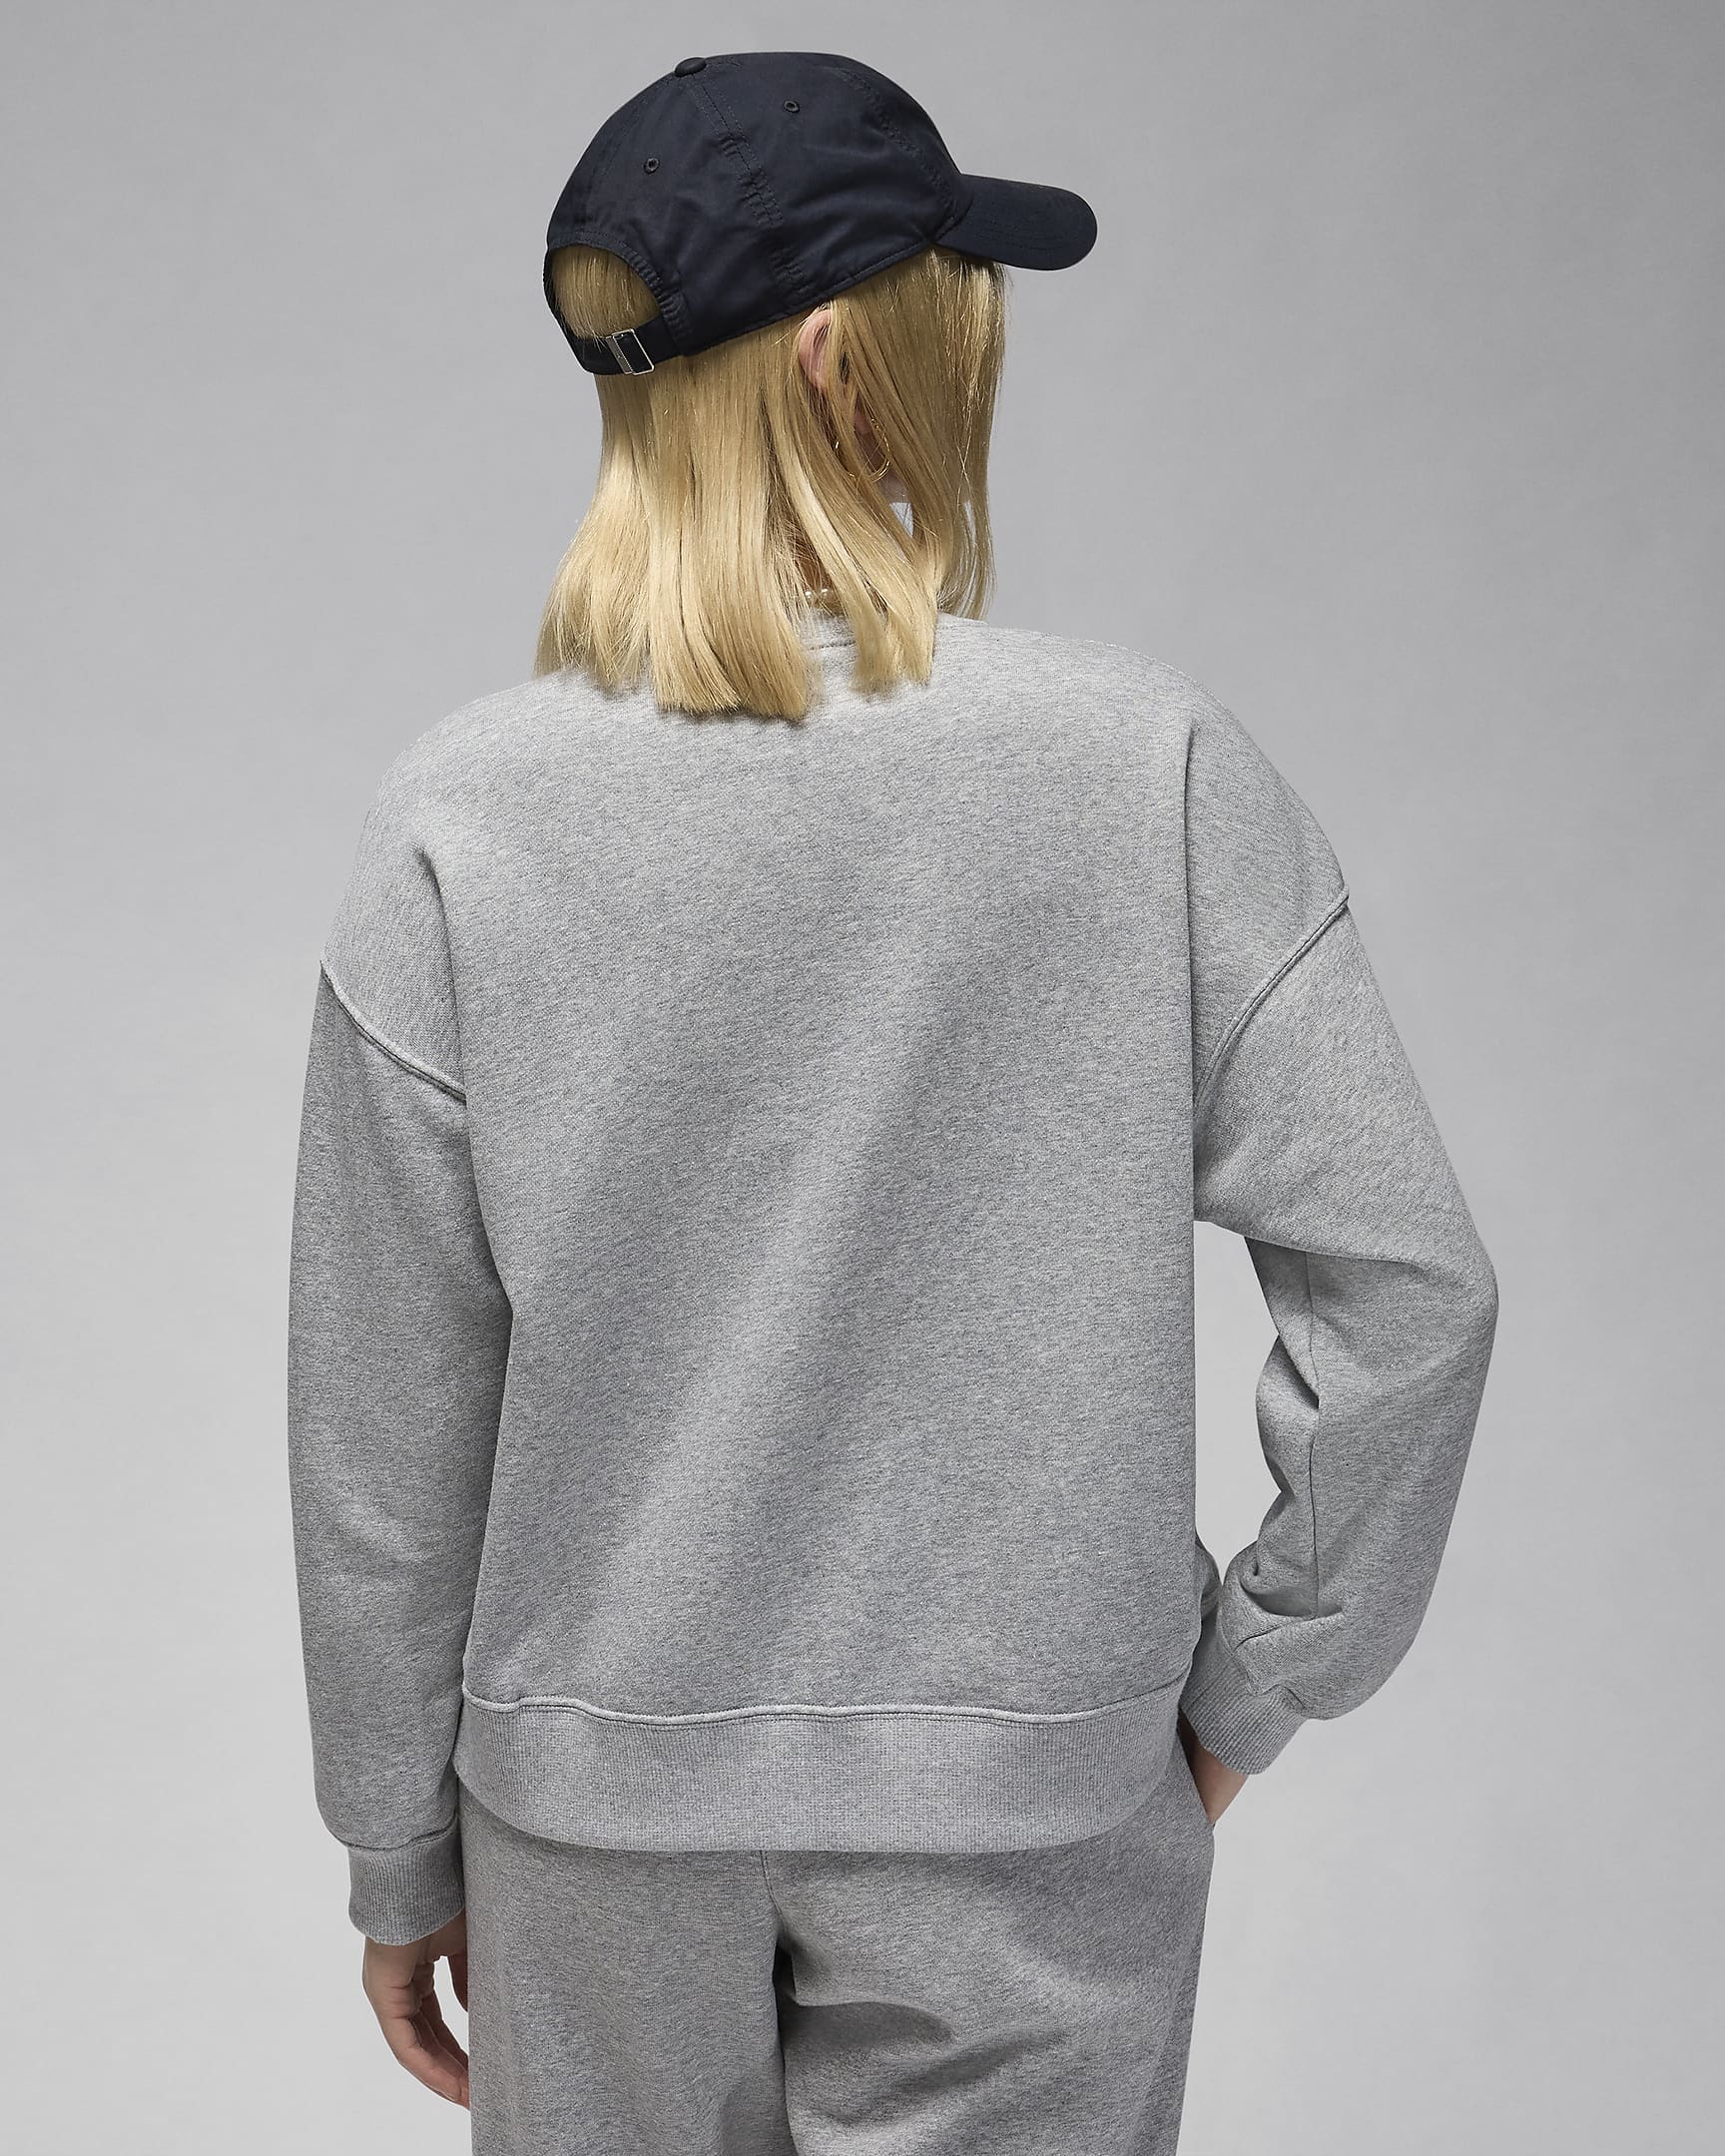 Jordan Brooklyn Fleece Women's Graphic Crew-Neck Sweatshirt. Nike JP